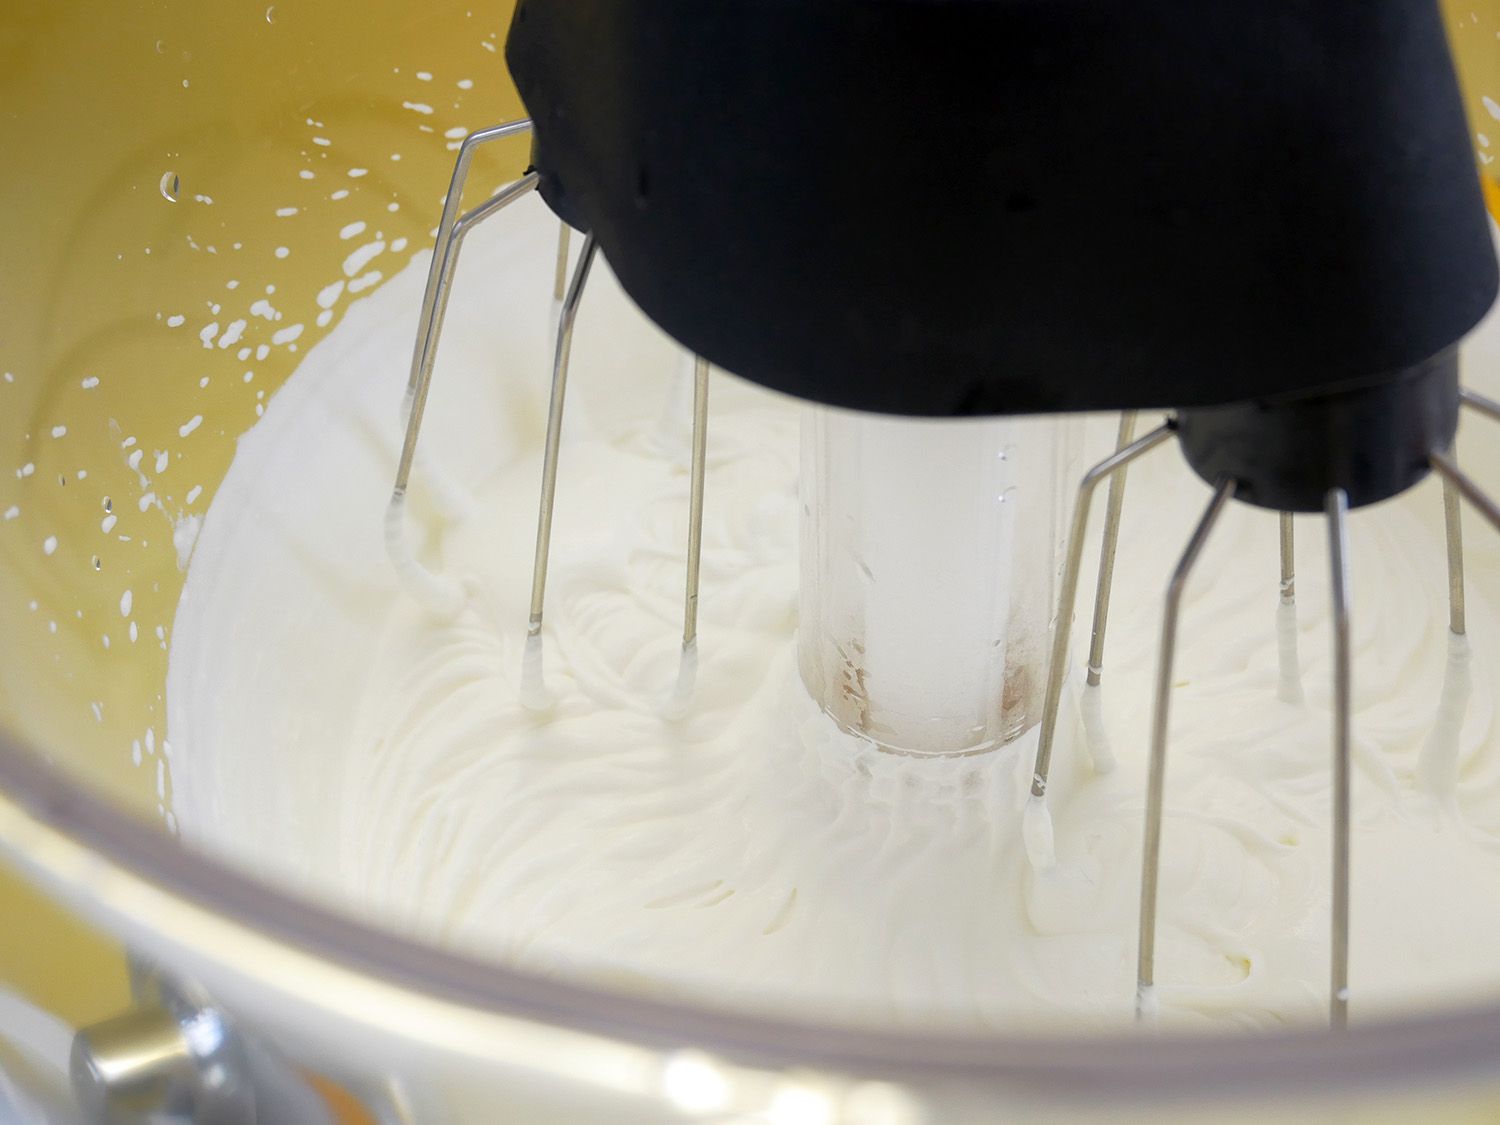 塑料碗中鲜奶油的特写镜头，多管齐下的搅拌器。